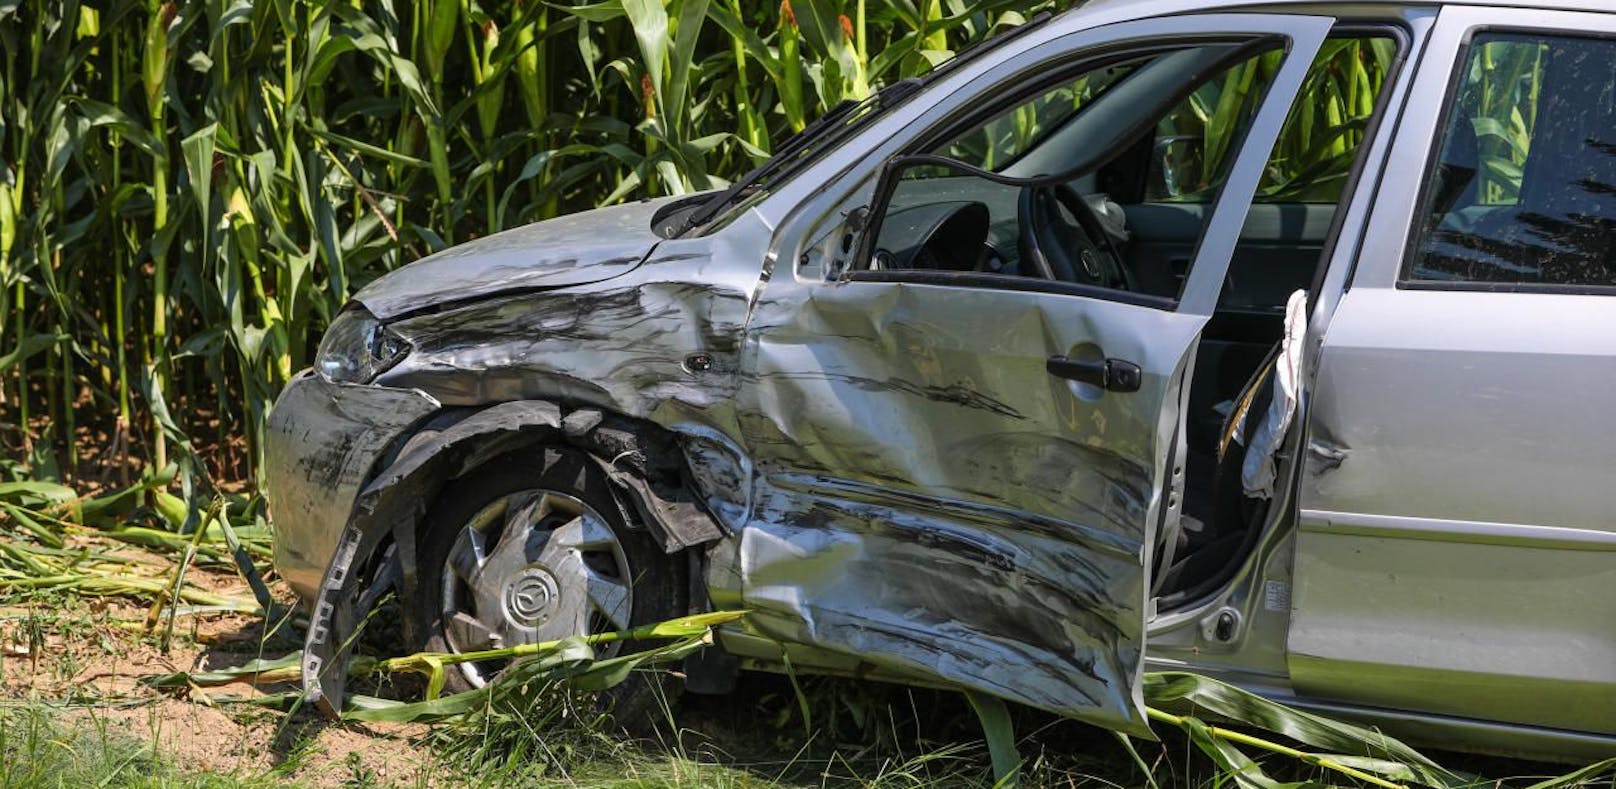 Crash mit Postauto: Pkw in Maisfeld geschleudert